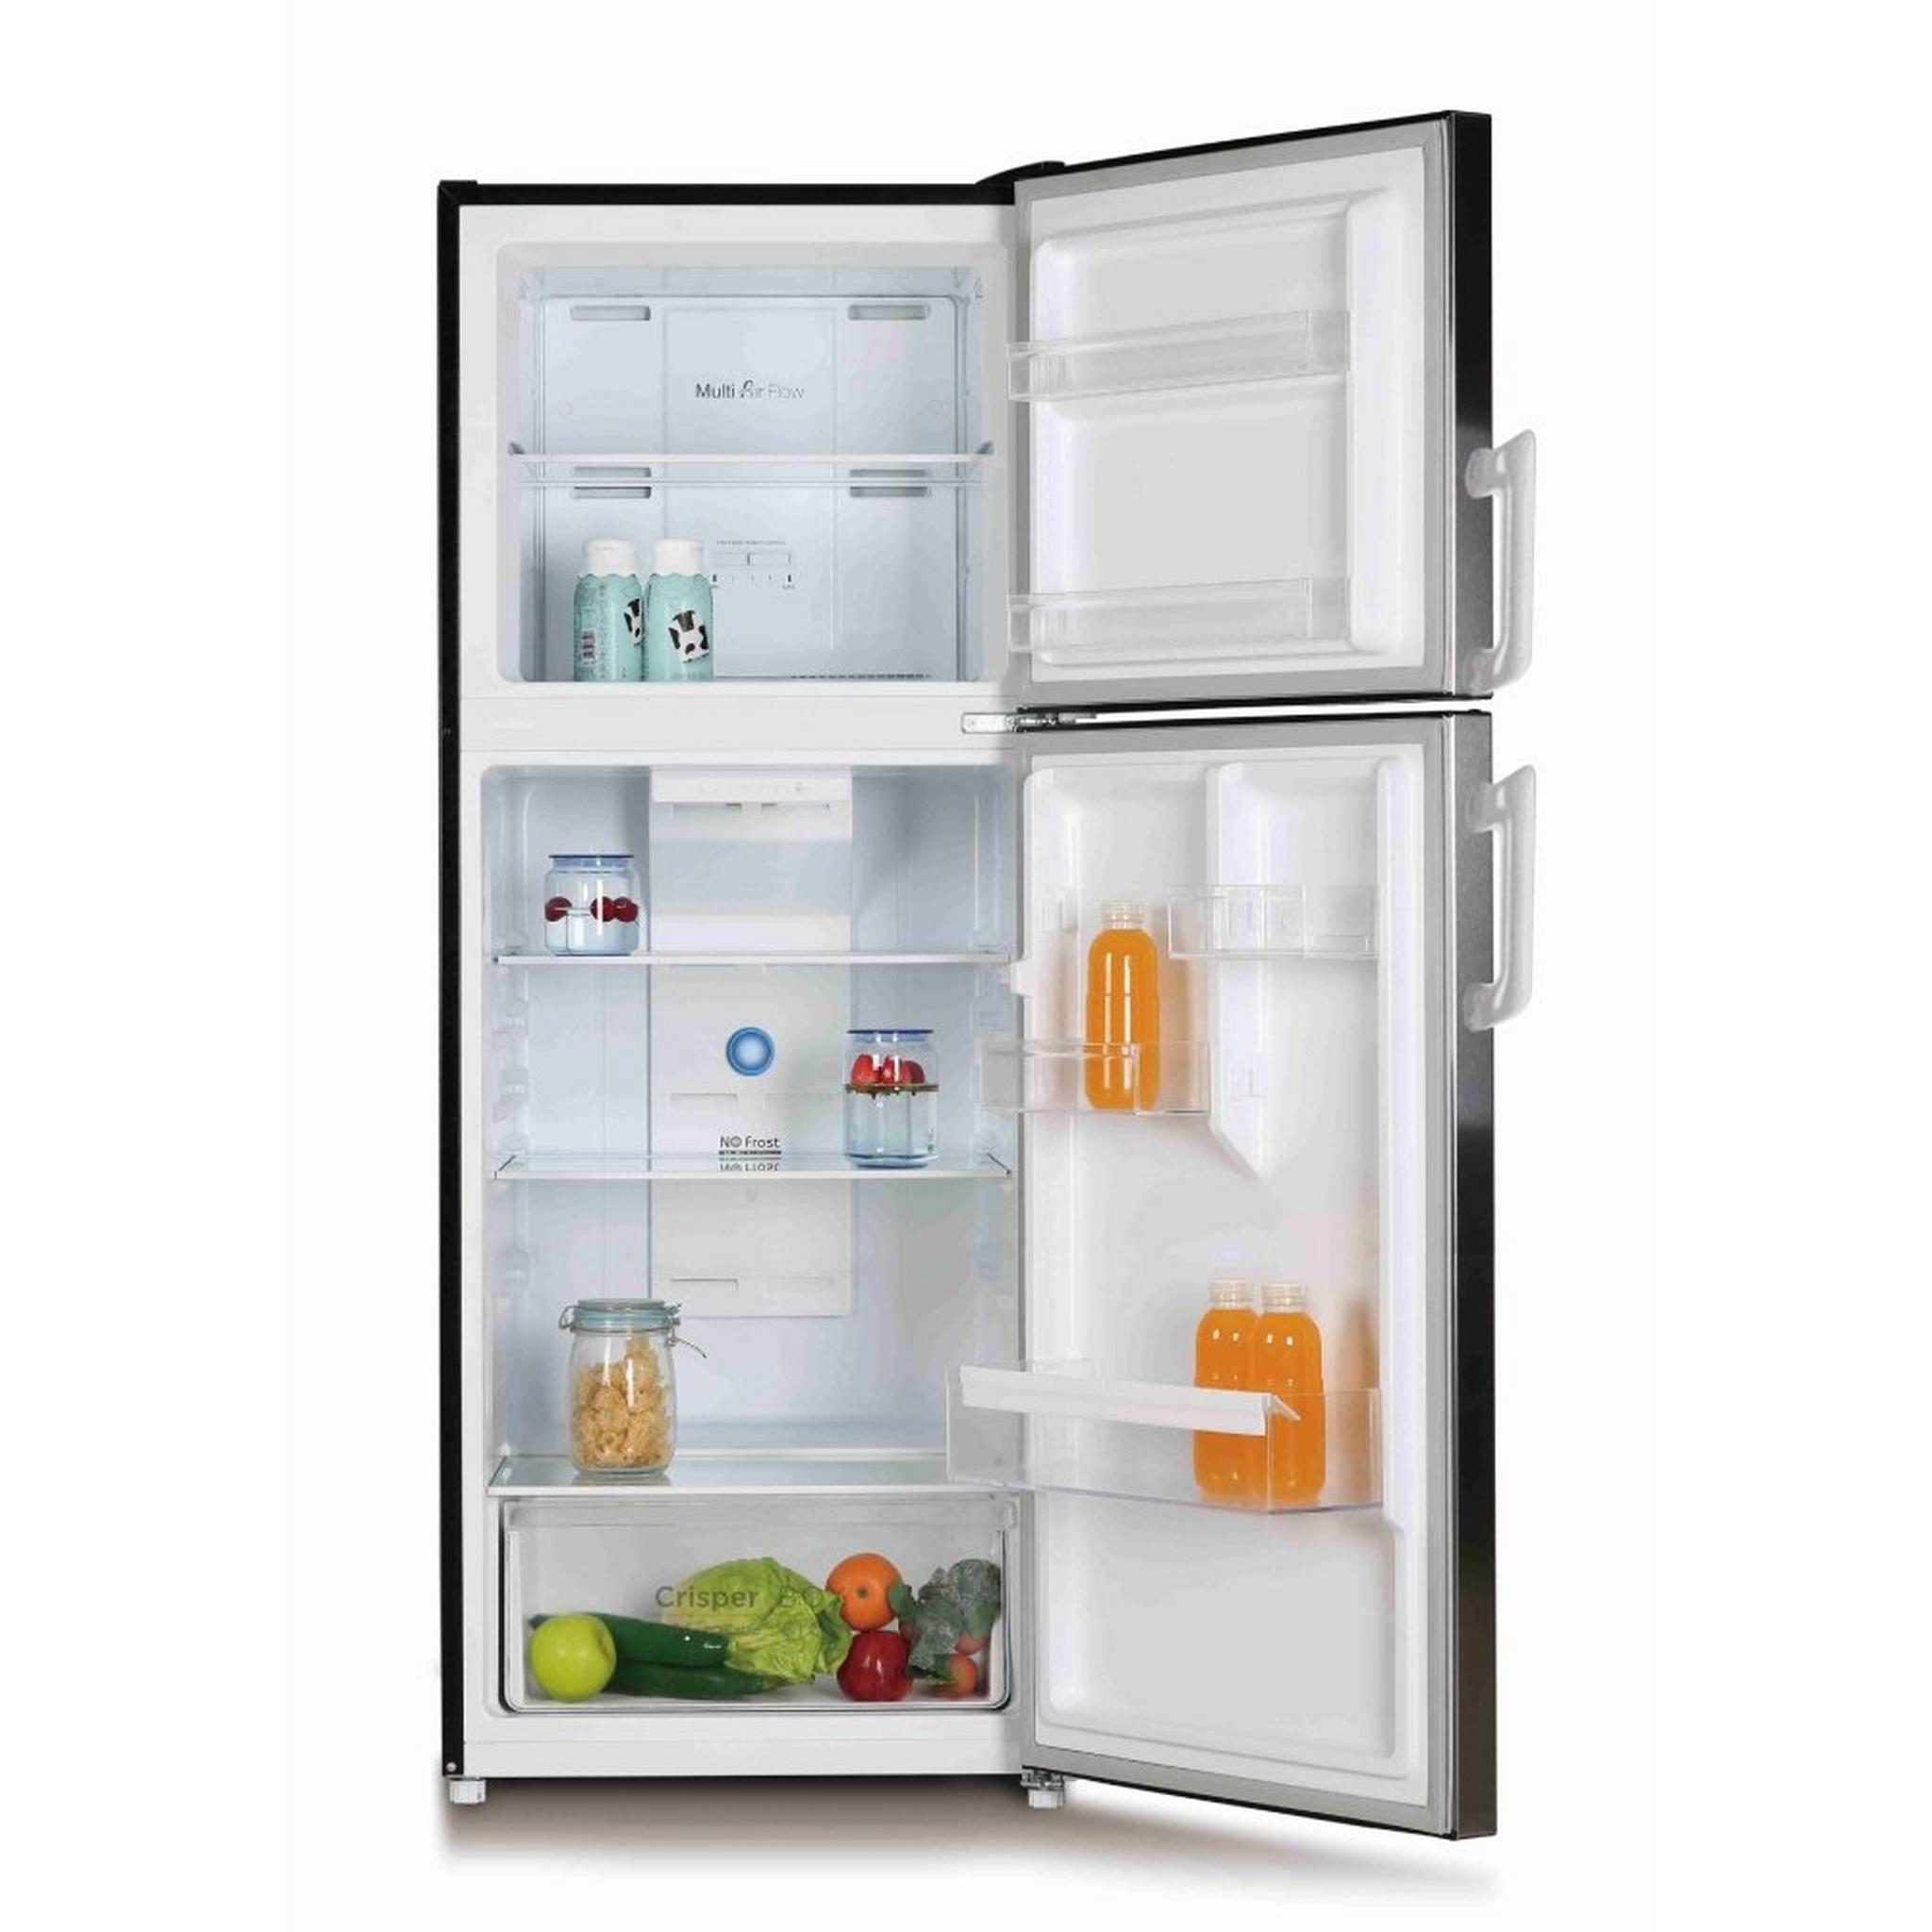 Wansa 13 CFT Top Mount Refrigerator (WRTG-365-NFSSC52) - Stainless Steel